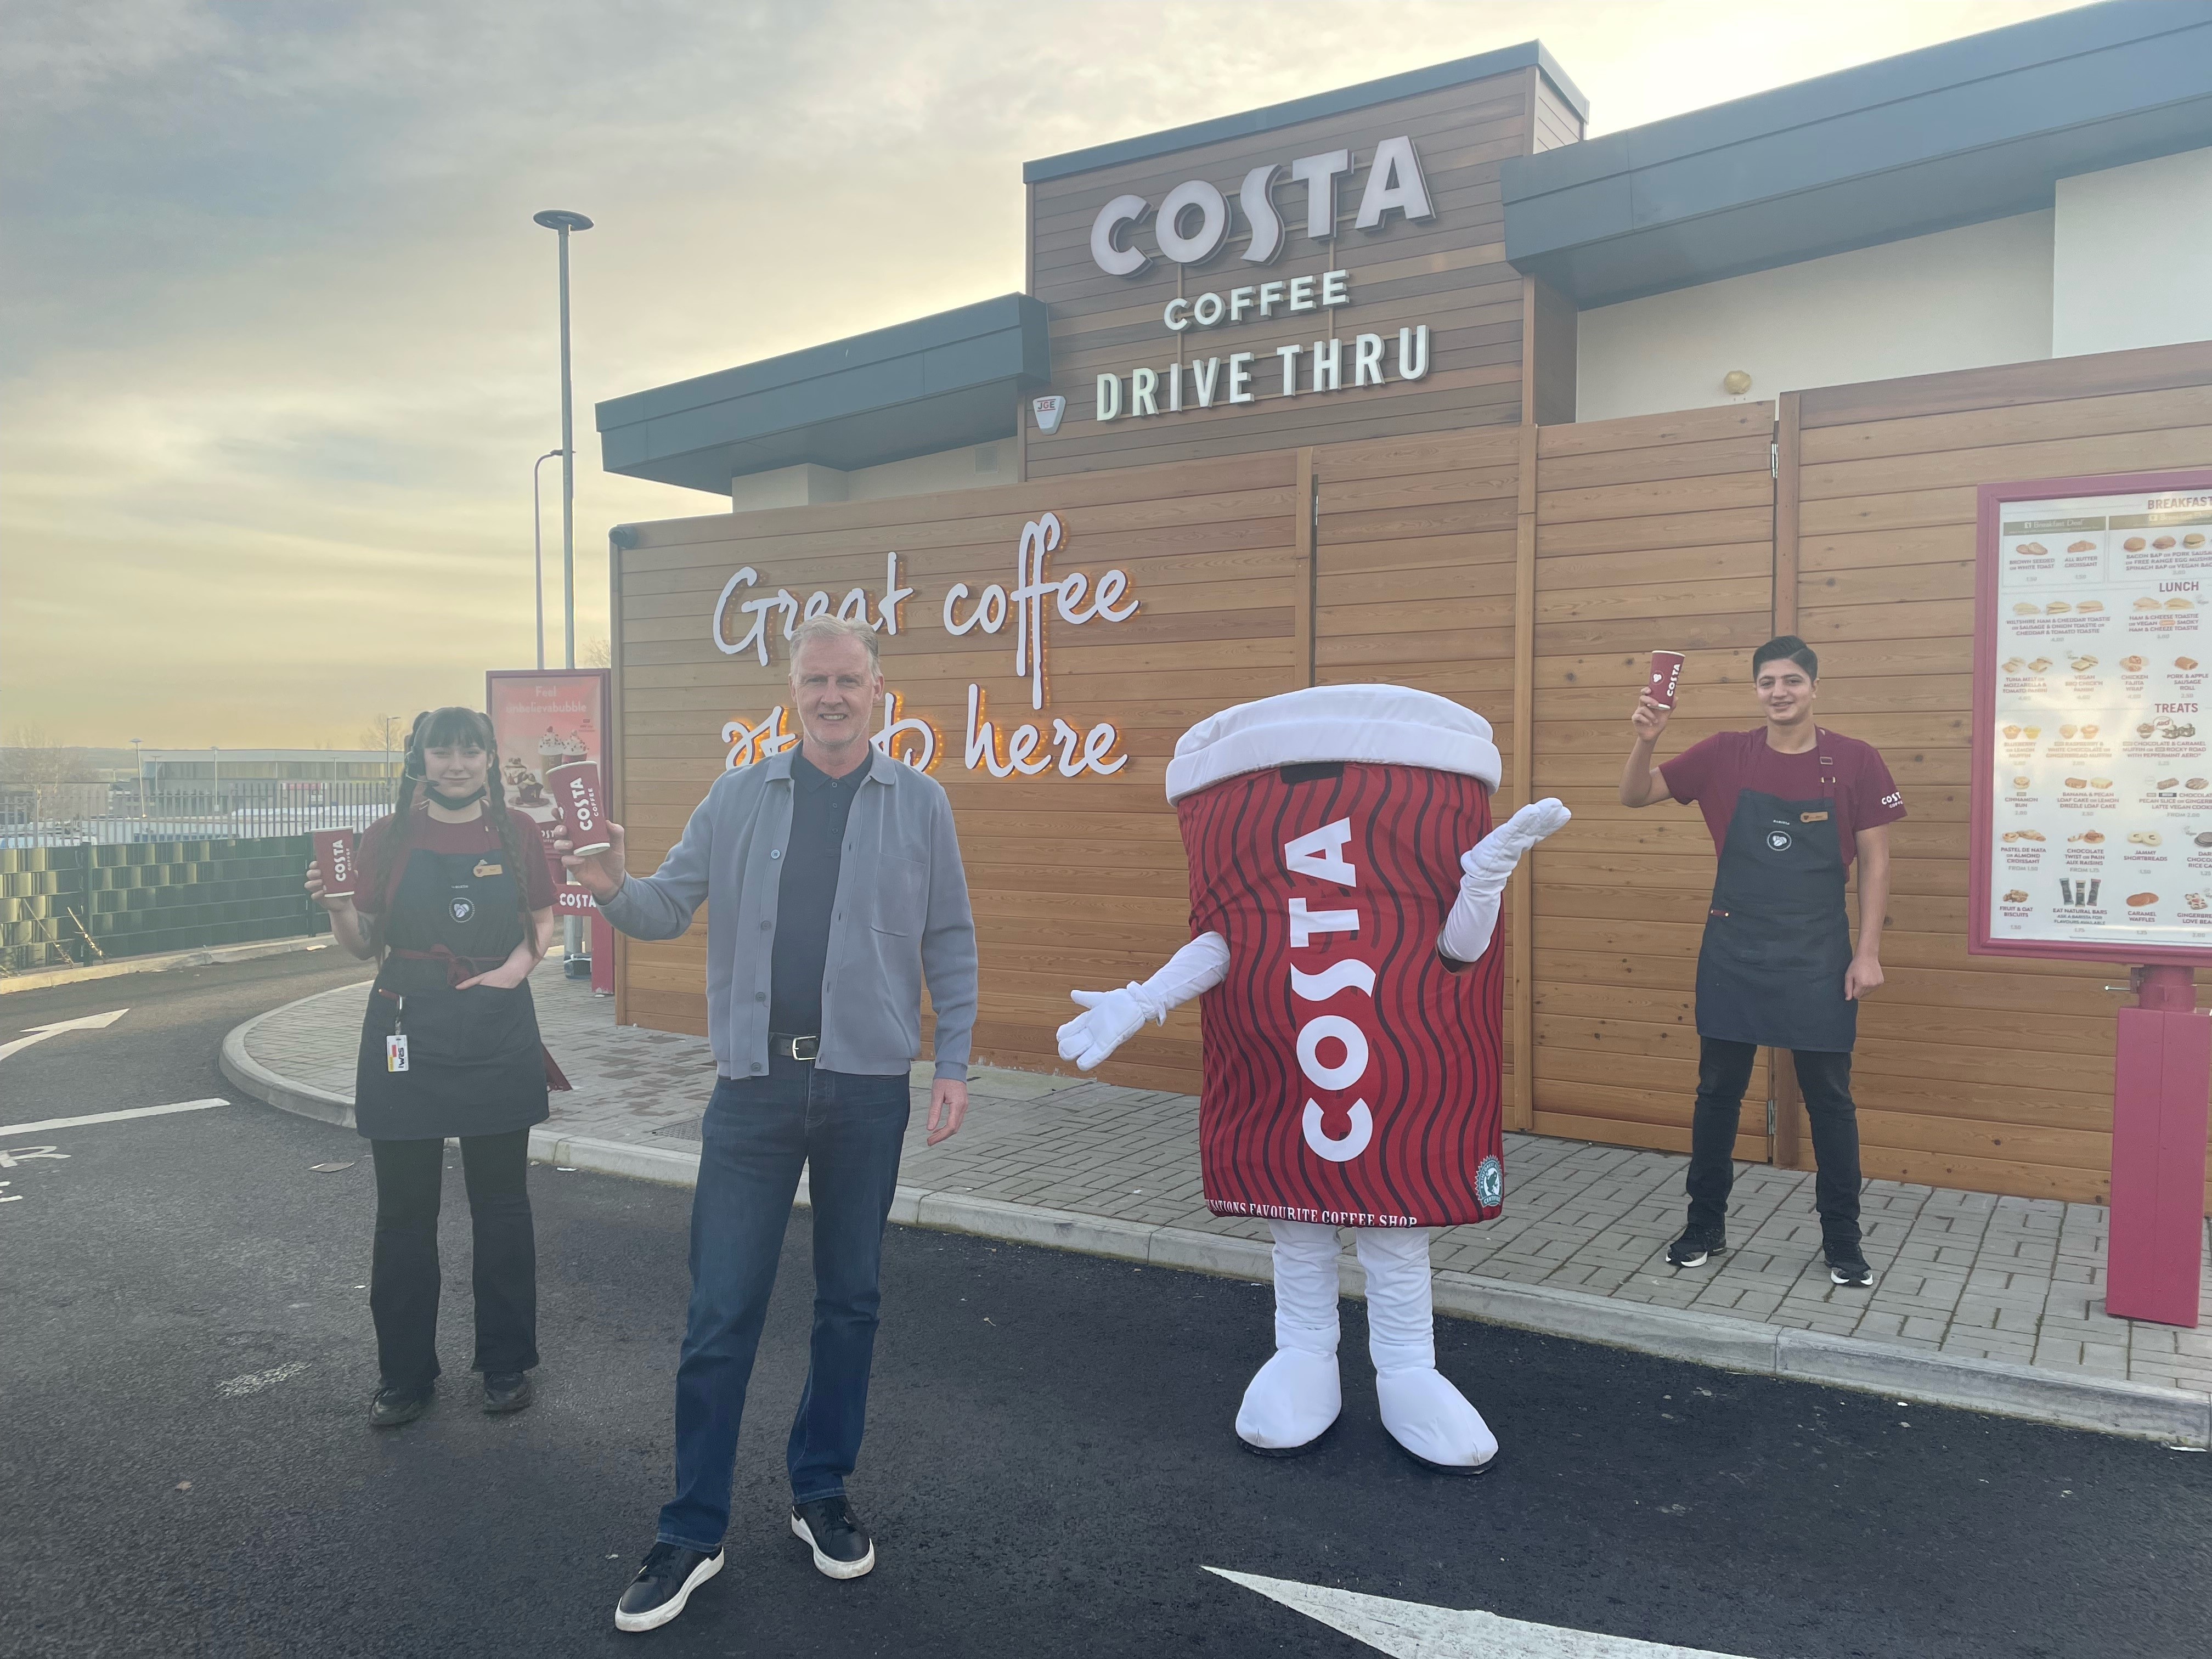 Costa drive-thru opens in Cumbernauld